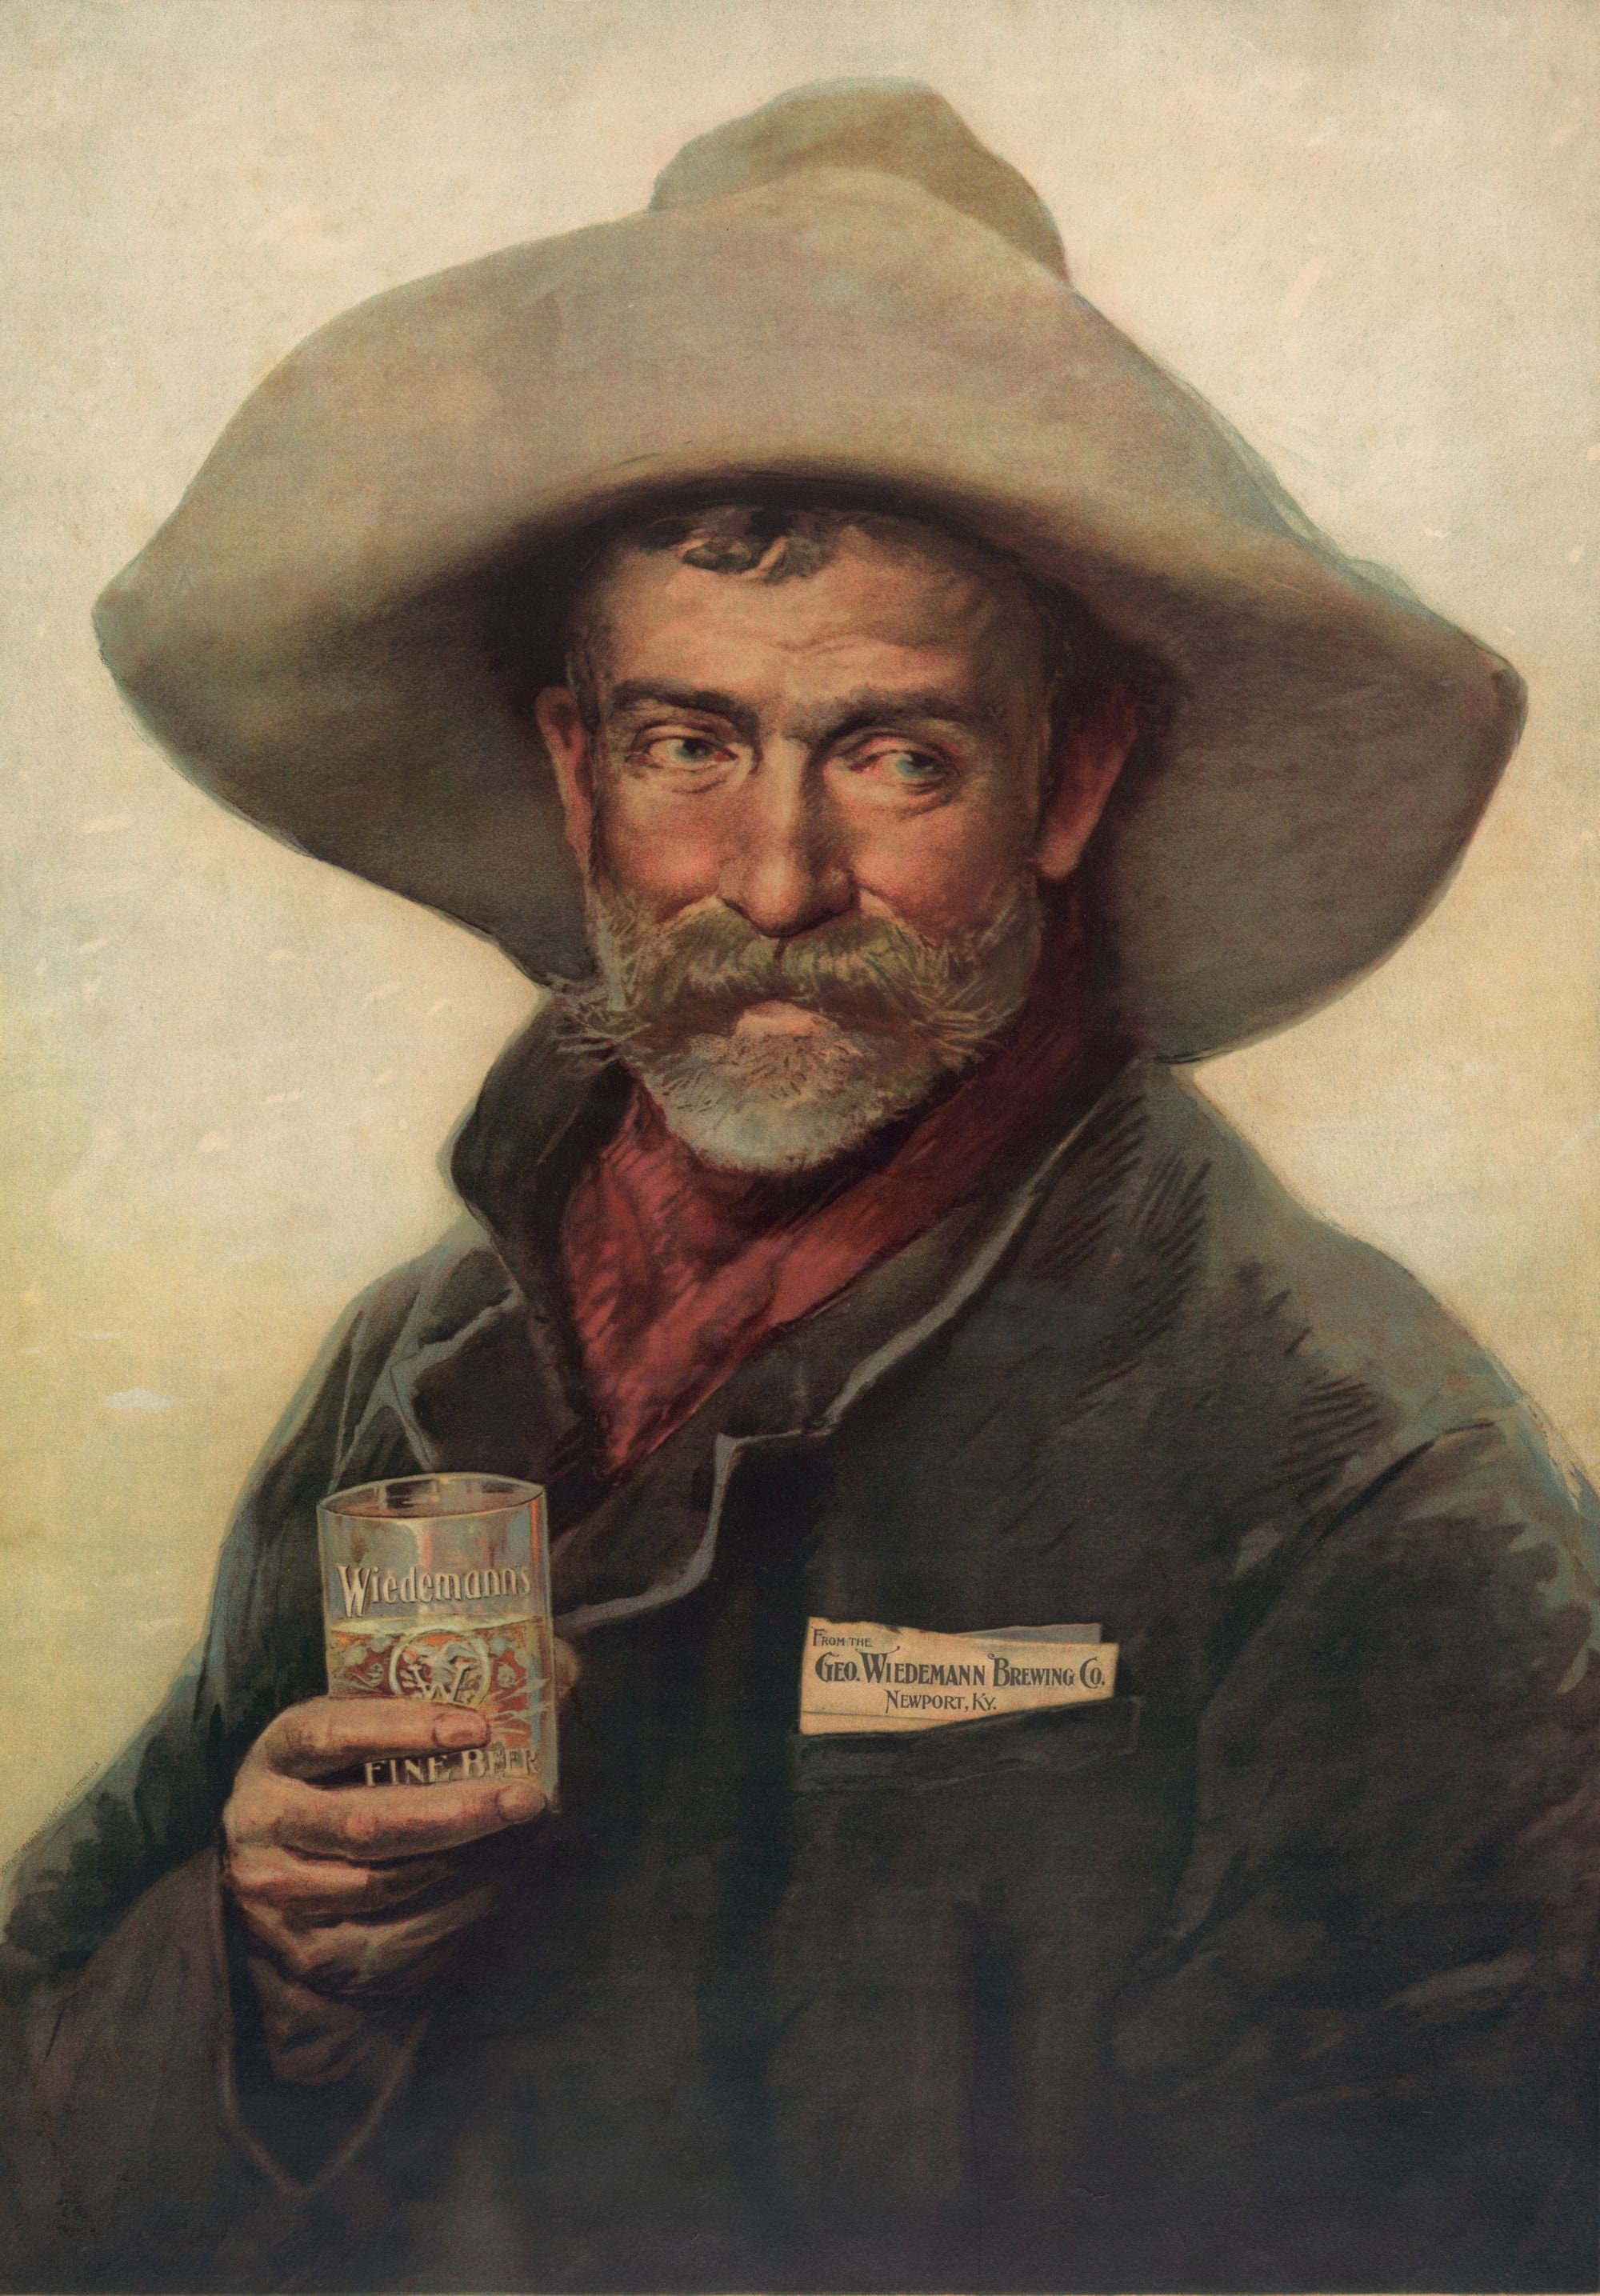 Wiedemanns Fine Beers 1895 Cowboy Newport Kentucky.